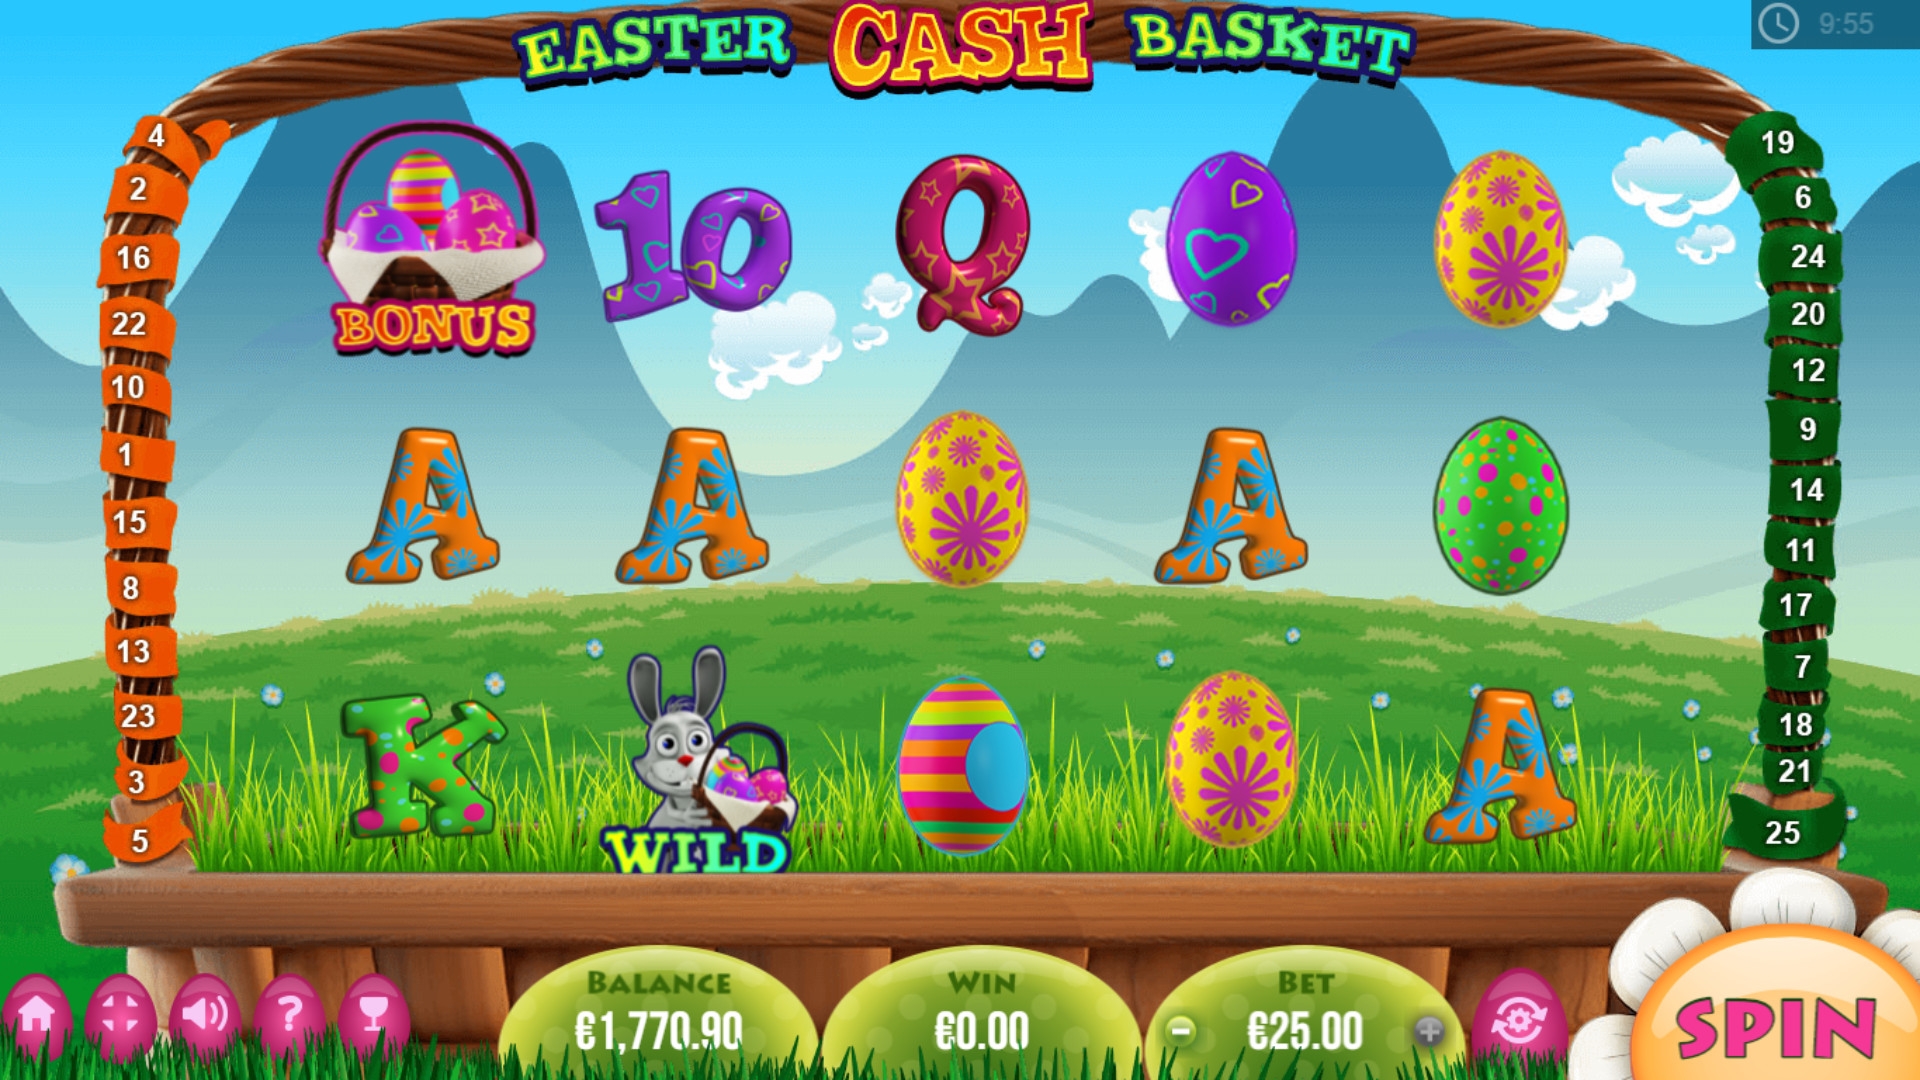 Easter Cash Basket (Easter Cash Basket) from category Slots